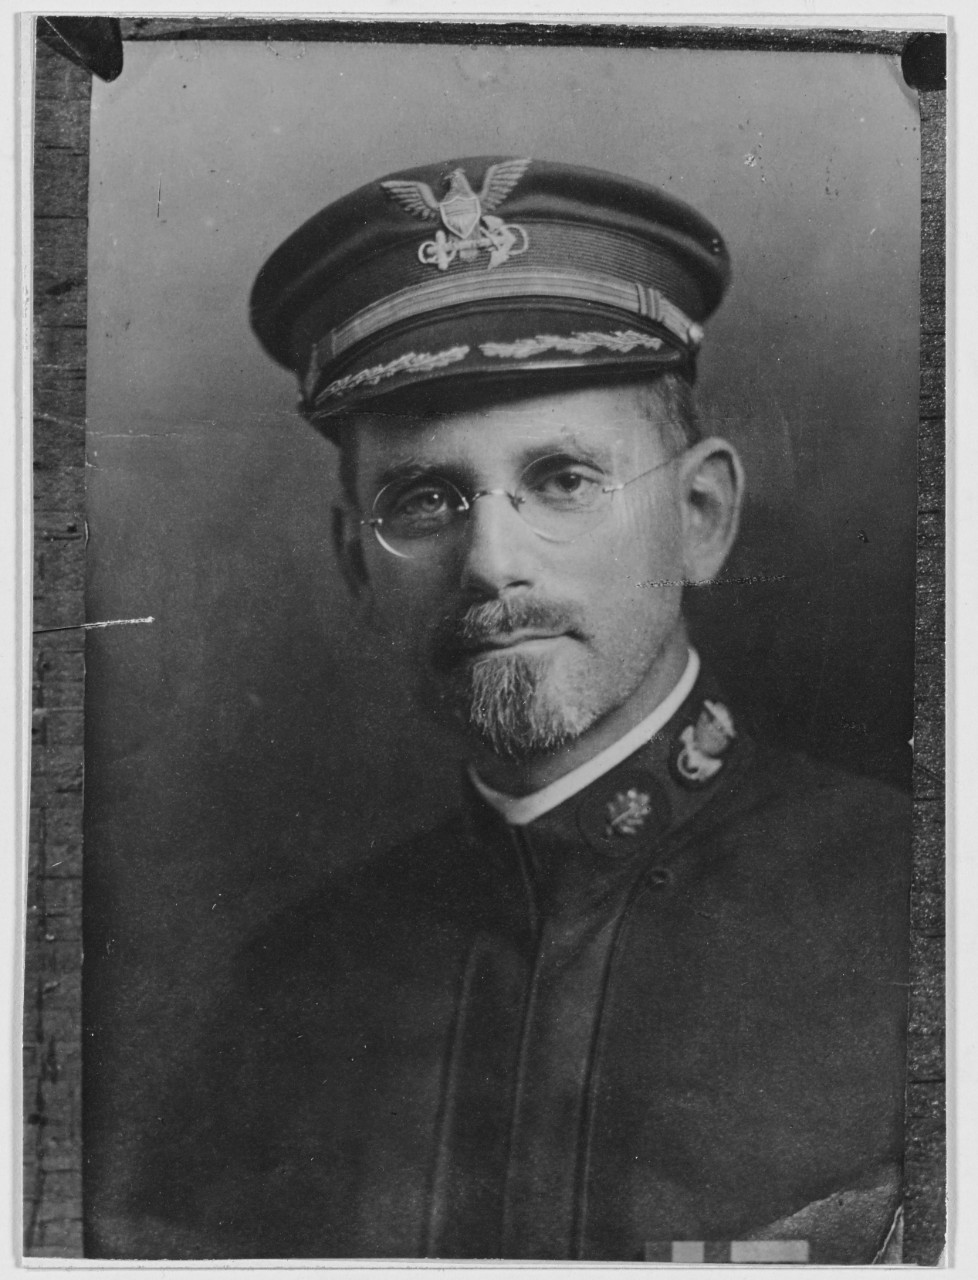 Captain C. Satterlee, U.S. Coast Guard